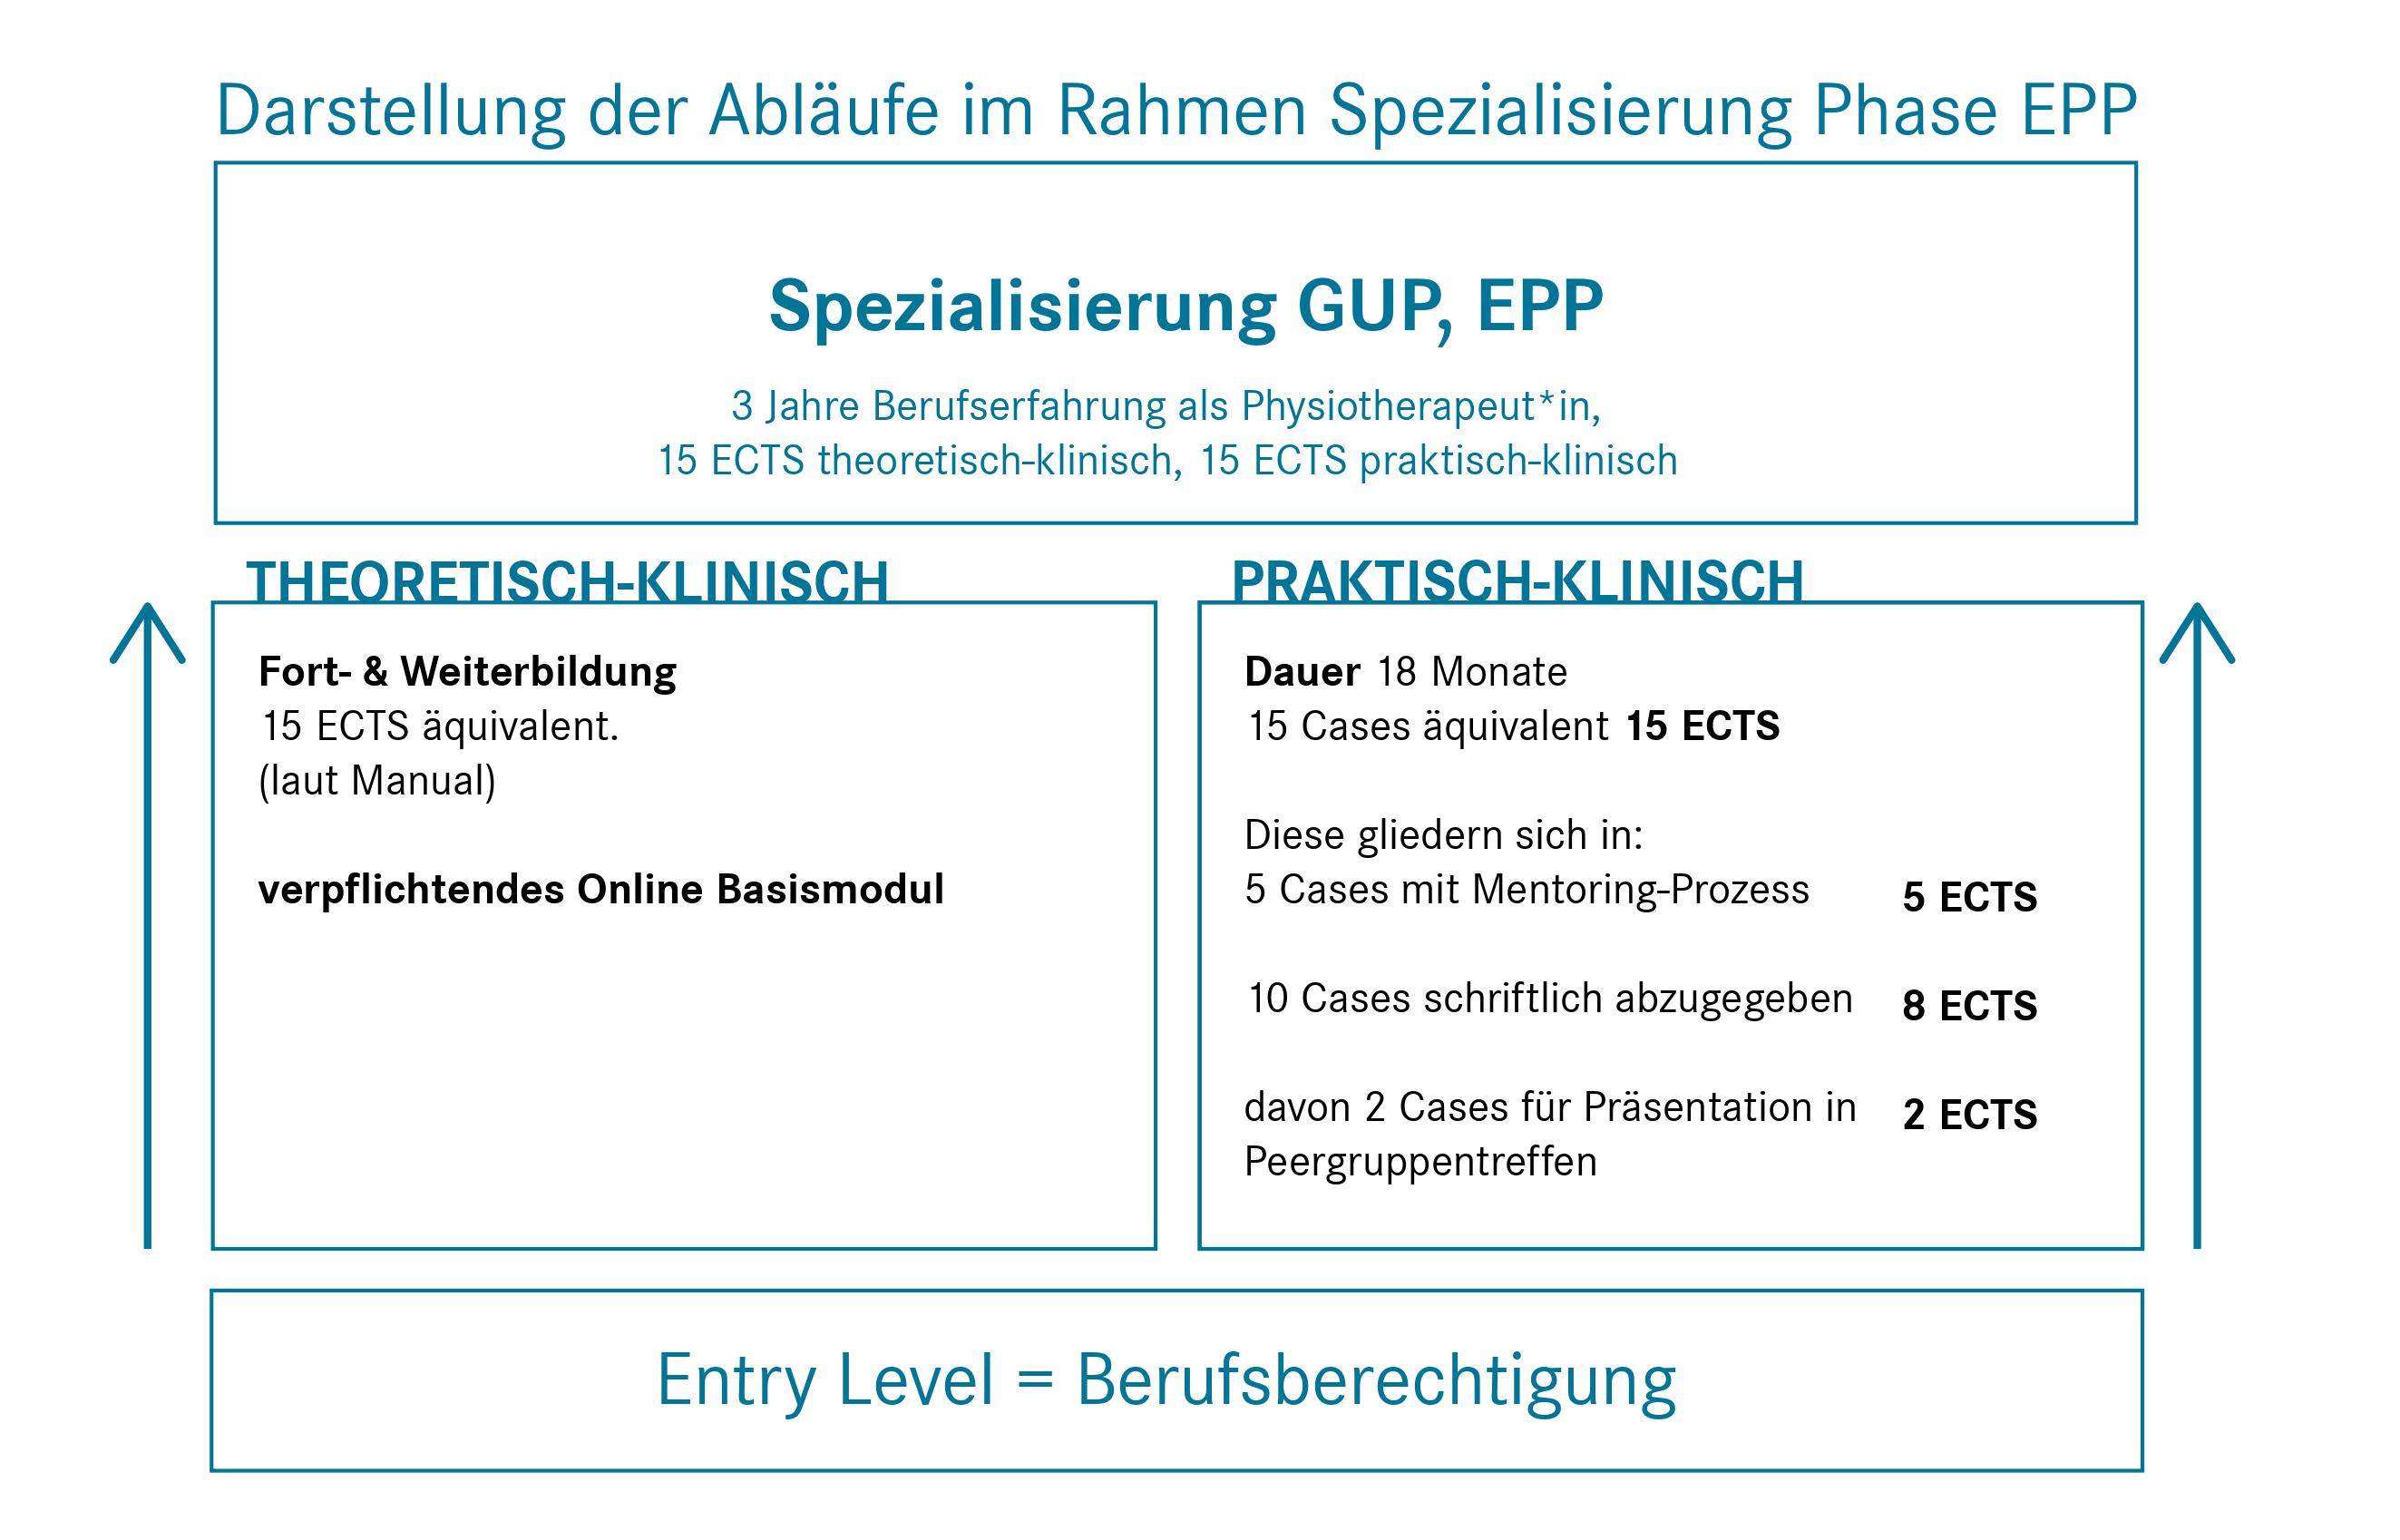 Darstellung der Abläufe im Rahmen der Spezialisierung GUP, EPP